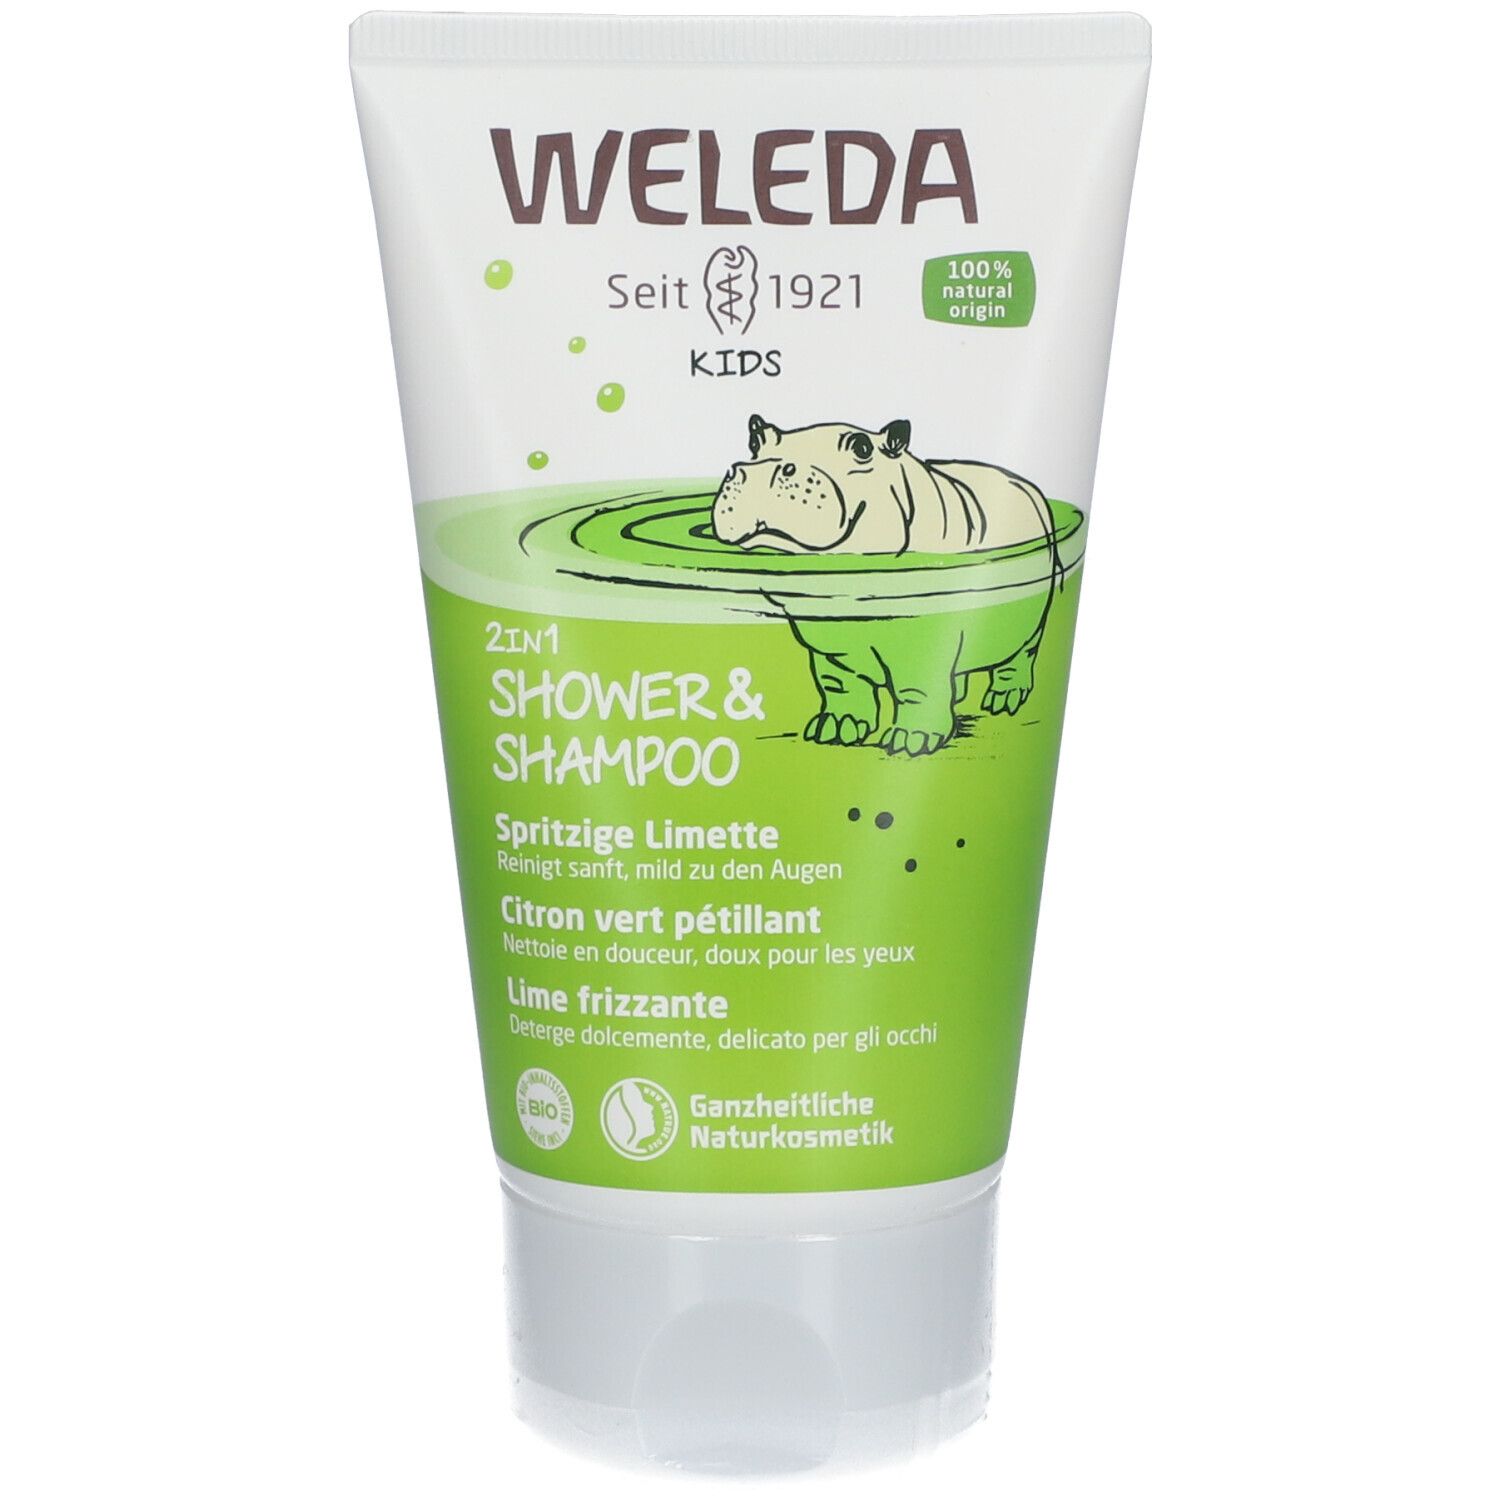 Weleda Kids 2in1 Shower & Shampoo Spritzige Limette - milde & erfrischende 2in1 Reinigung für Kinder